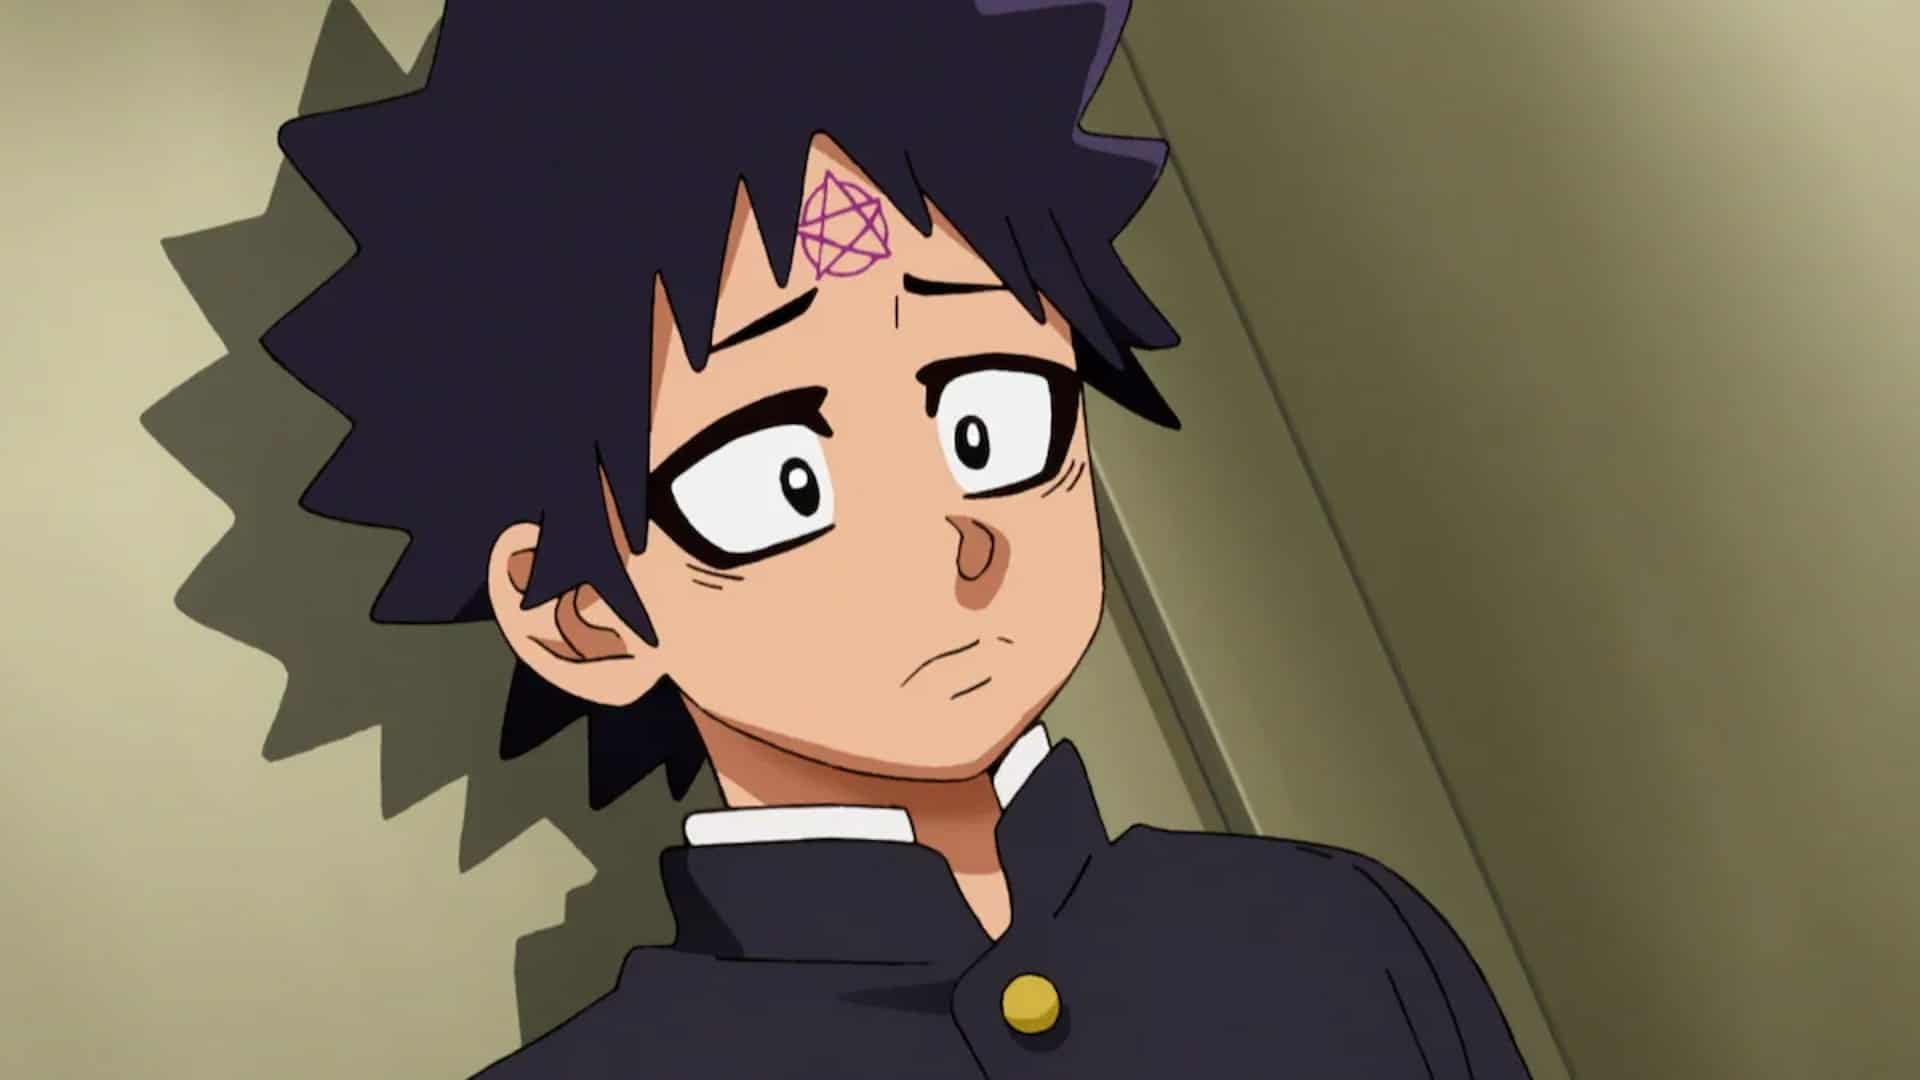 Tousuke Rokudo as shown in Rokudo's Bad Girls